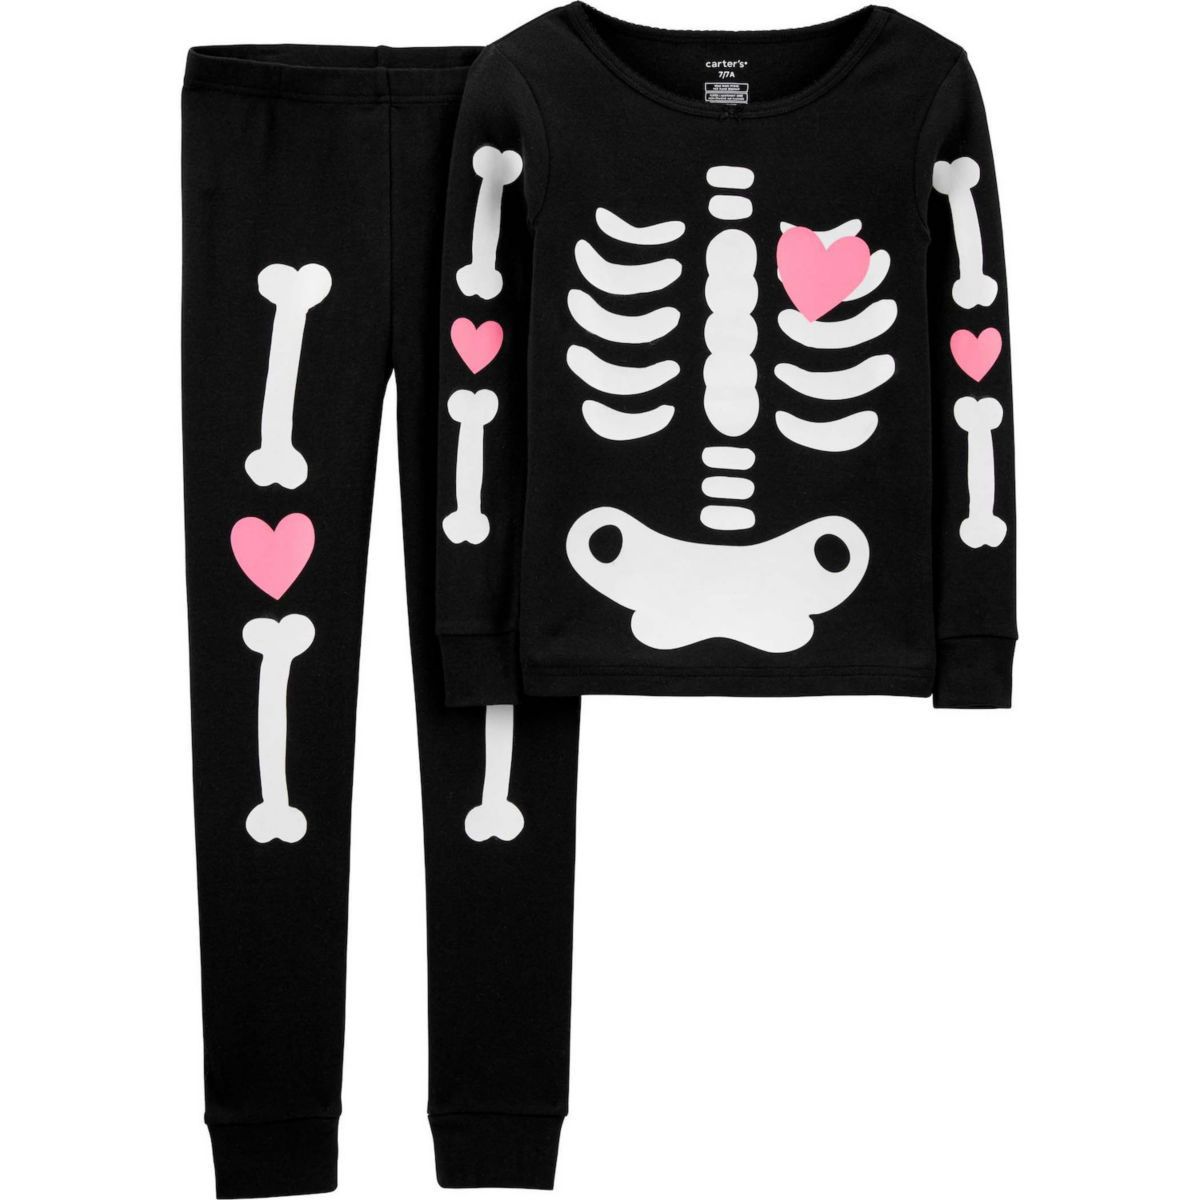 Halloweenowa piżama lub trend pjs - dziecięca piżama ze wzorem szkieletu